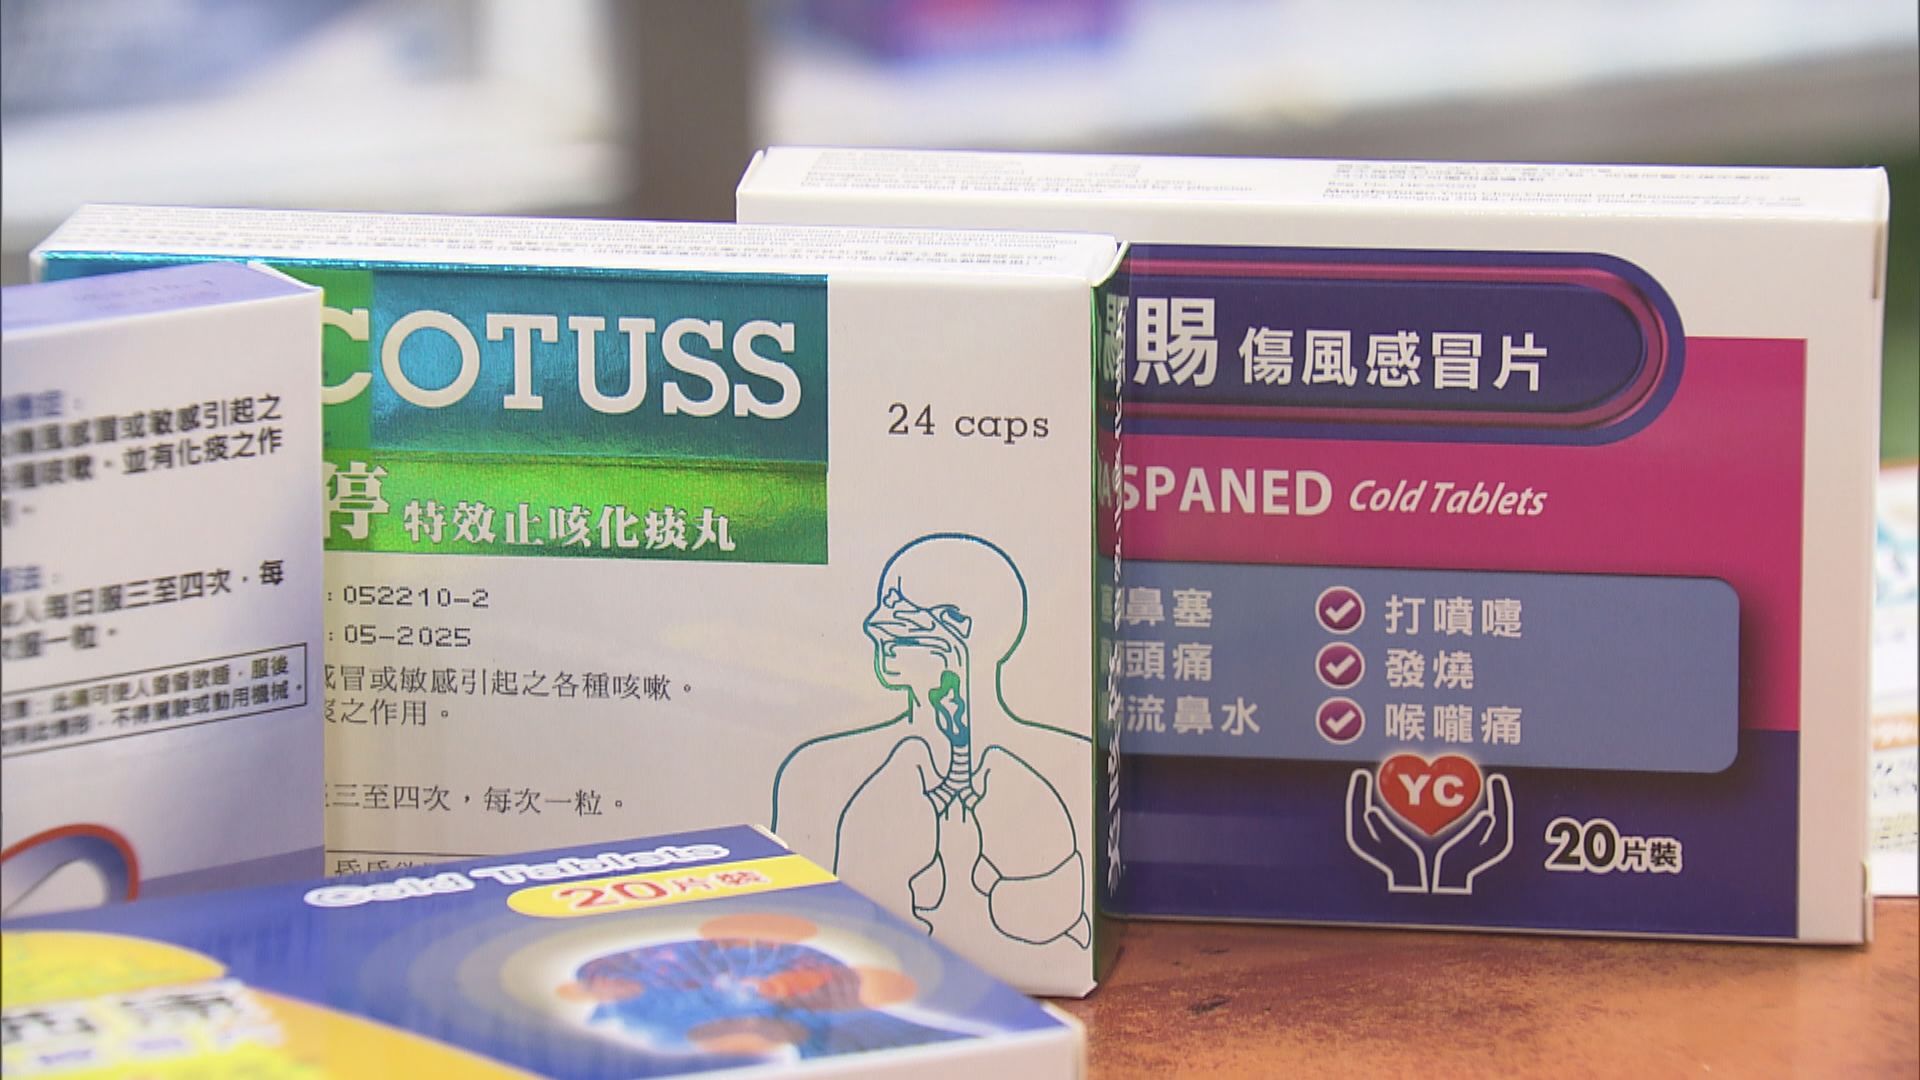 有集運站及藥房稱可代寄藥　當局指進出口藥劑品要有許可證